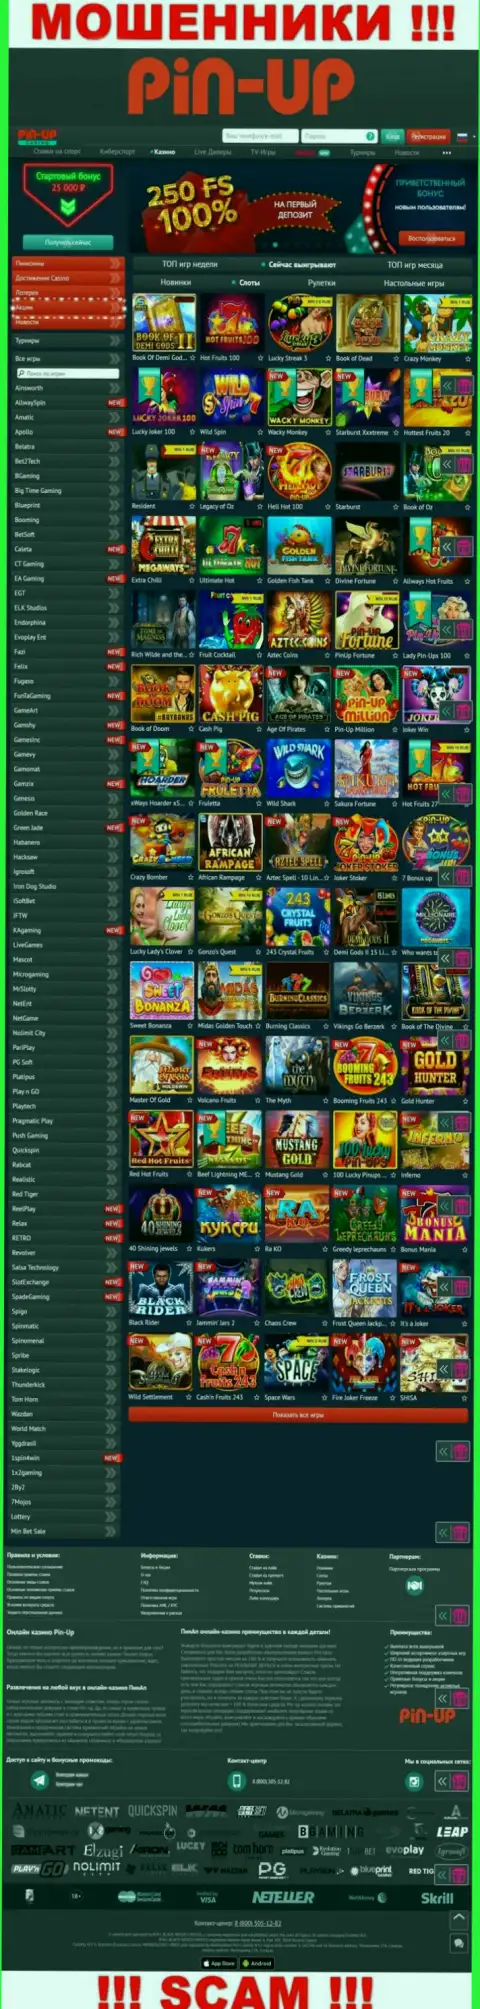 Pin-Up Casino - это официальный сайт мошенников PinUp Casino